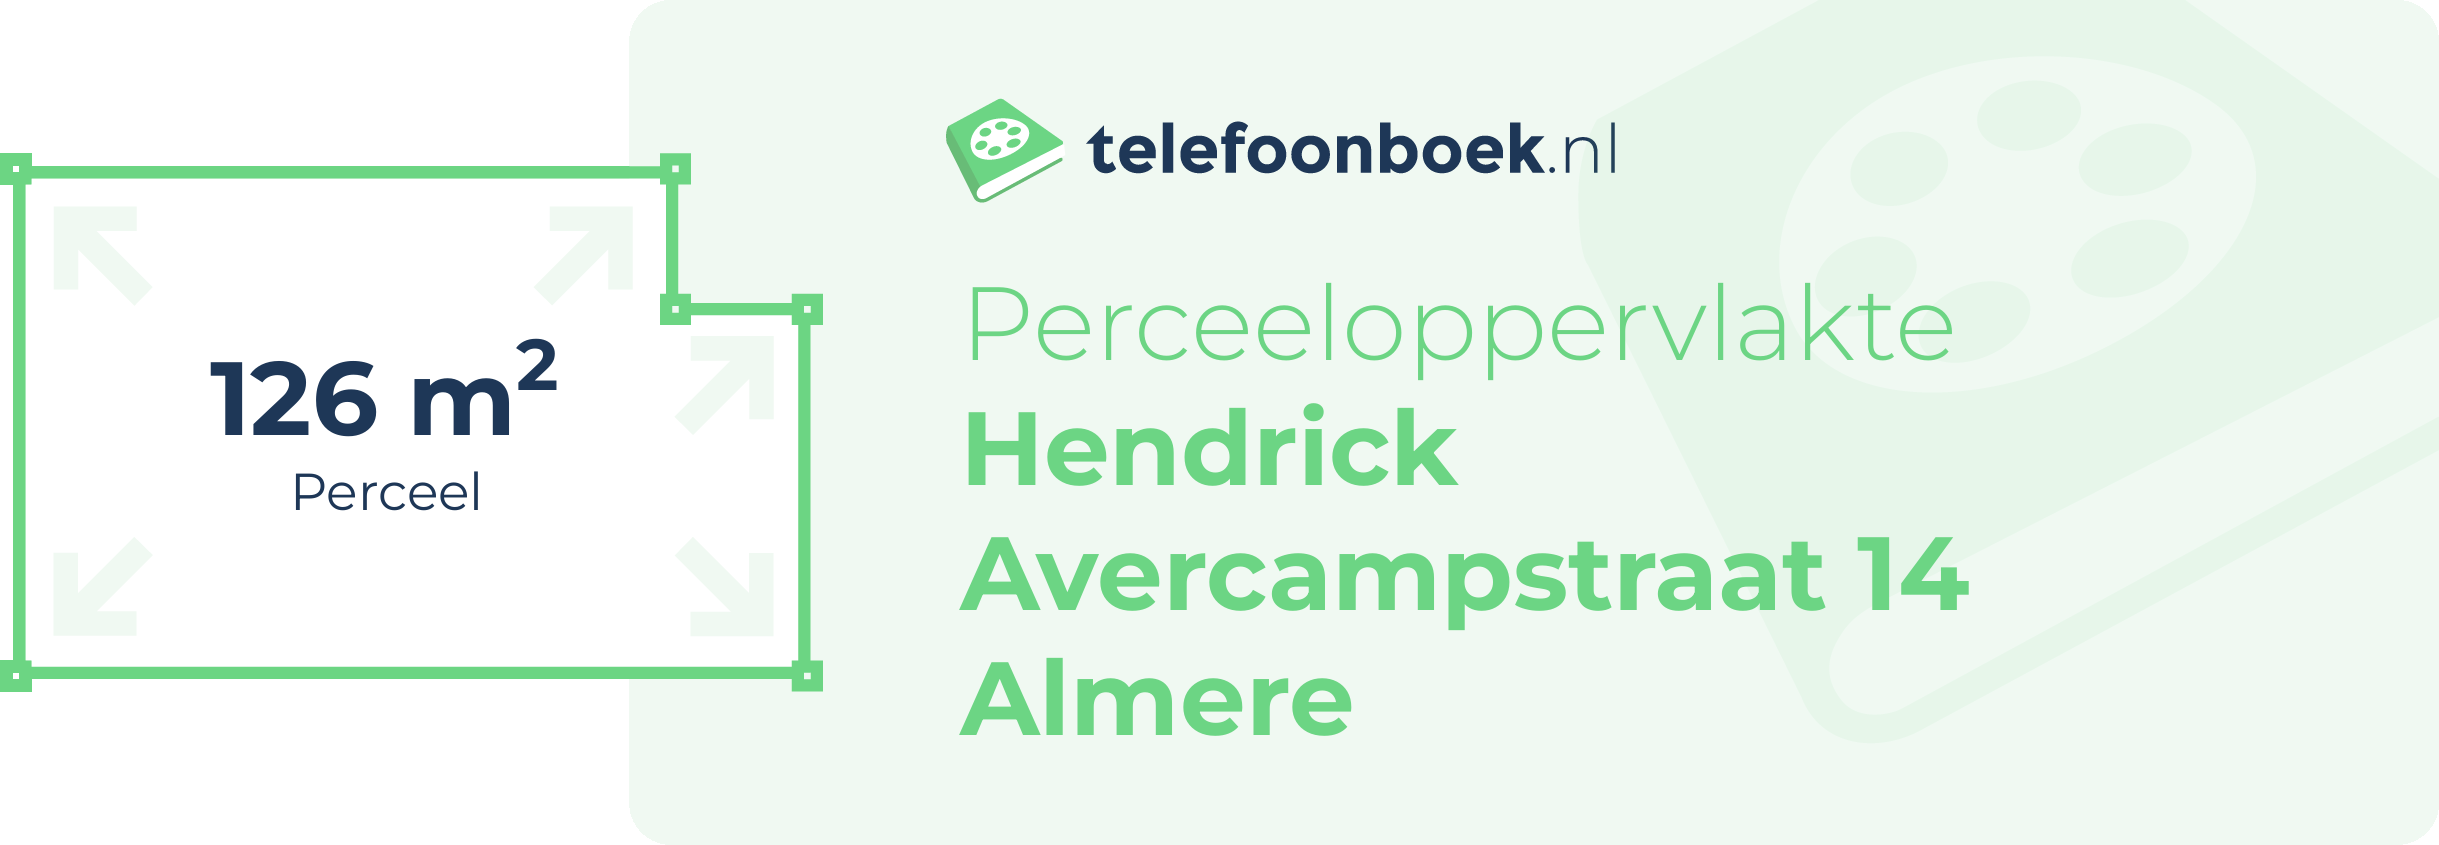 Perceeloppervlakte Hendrick Avercampstraat 14 Almere